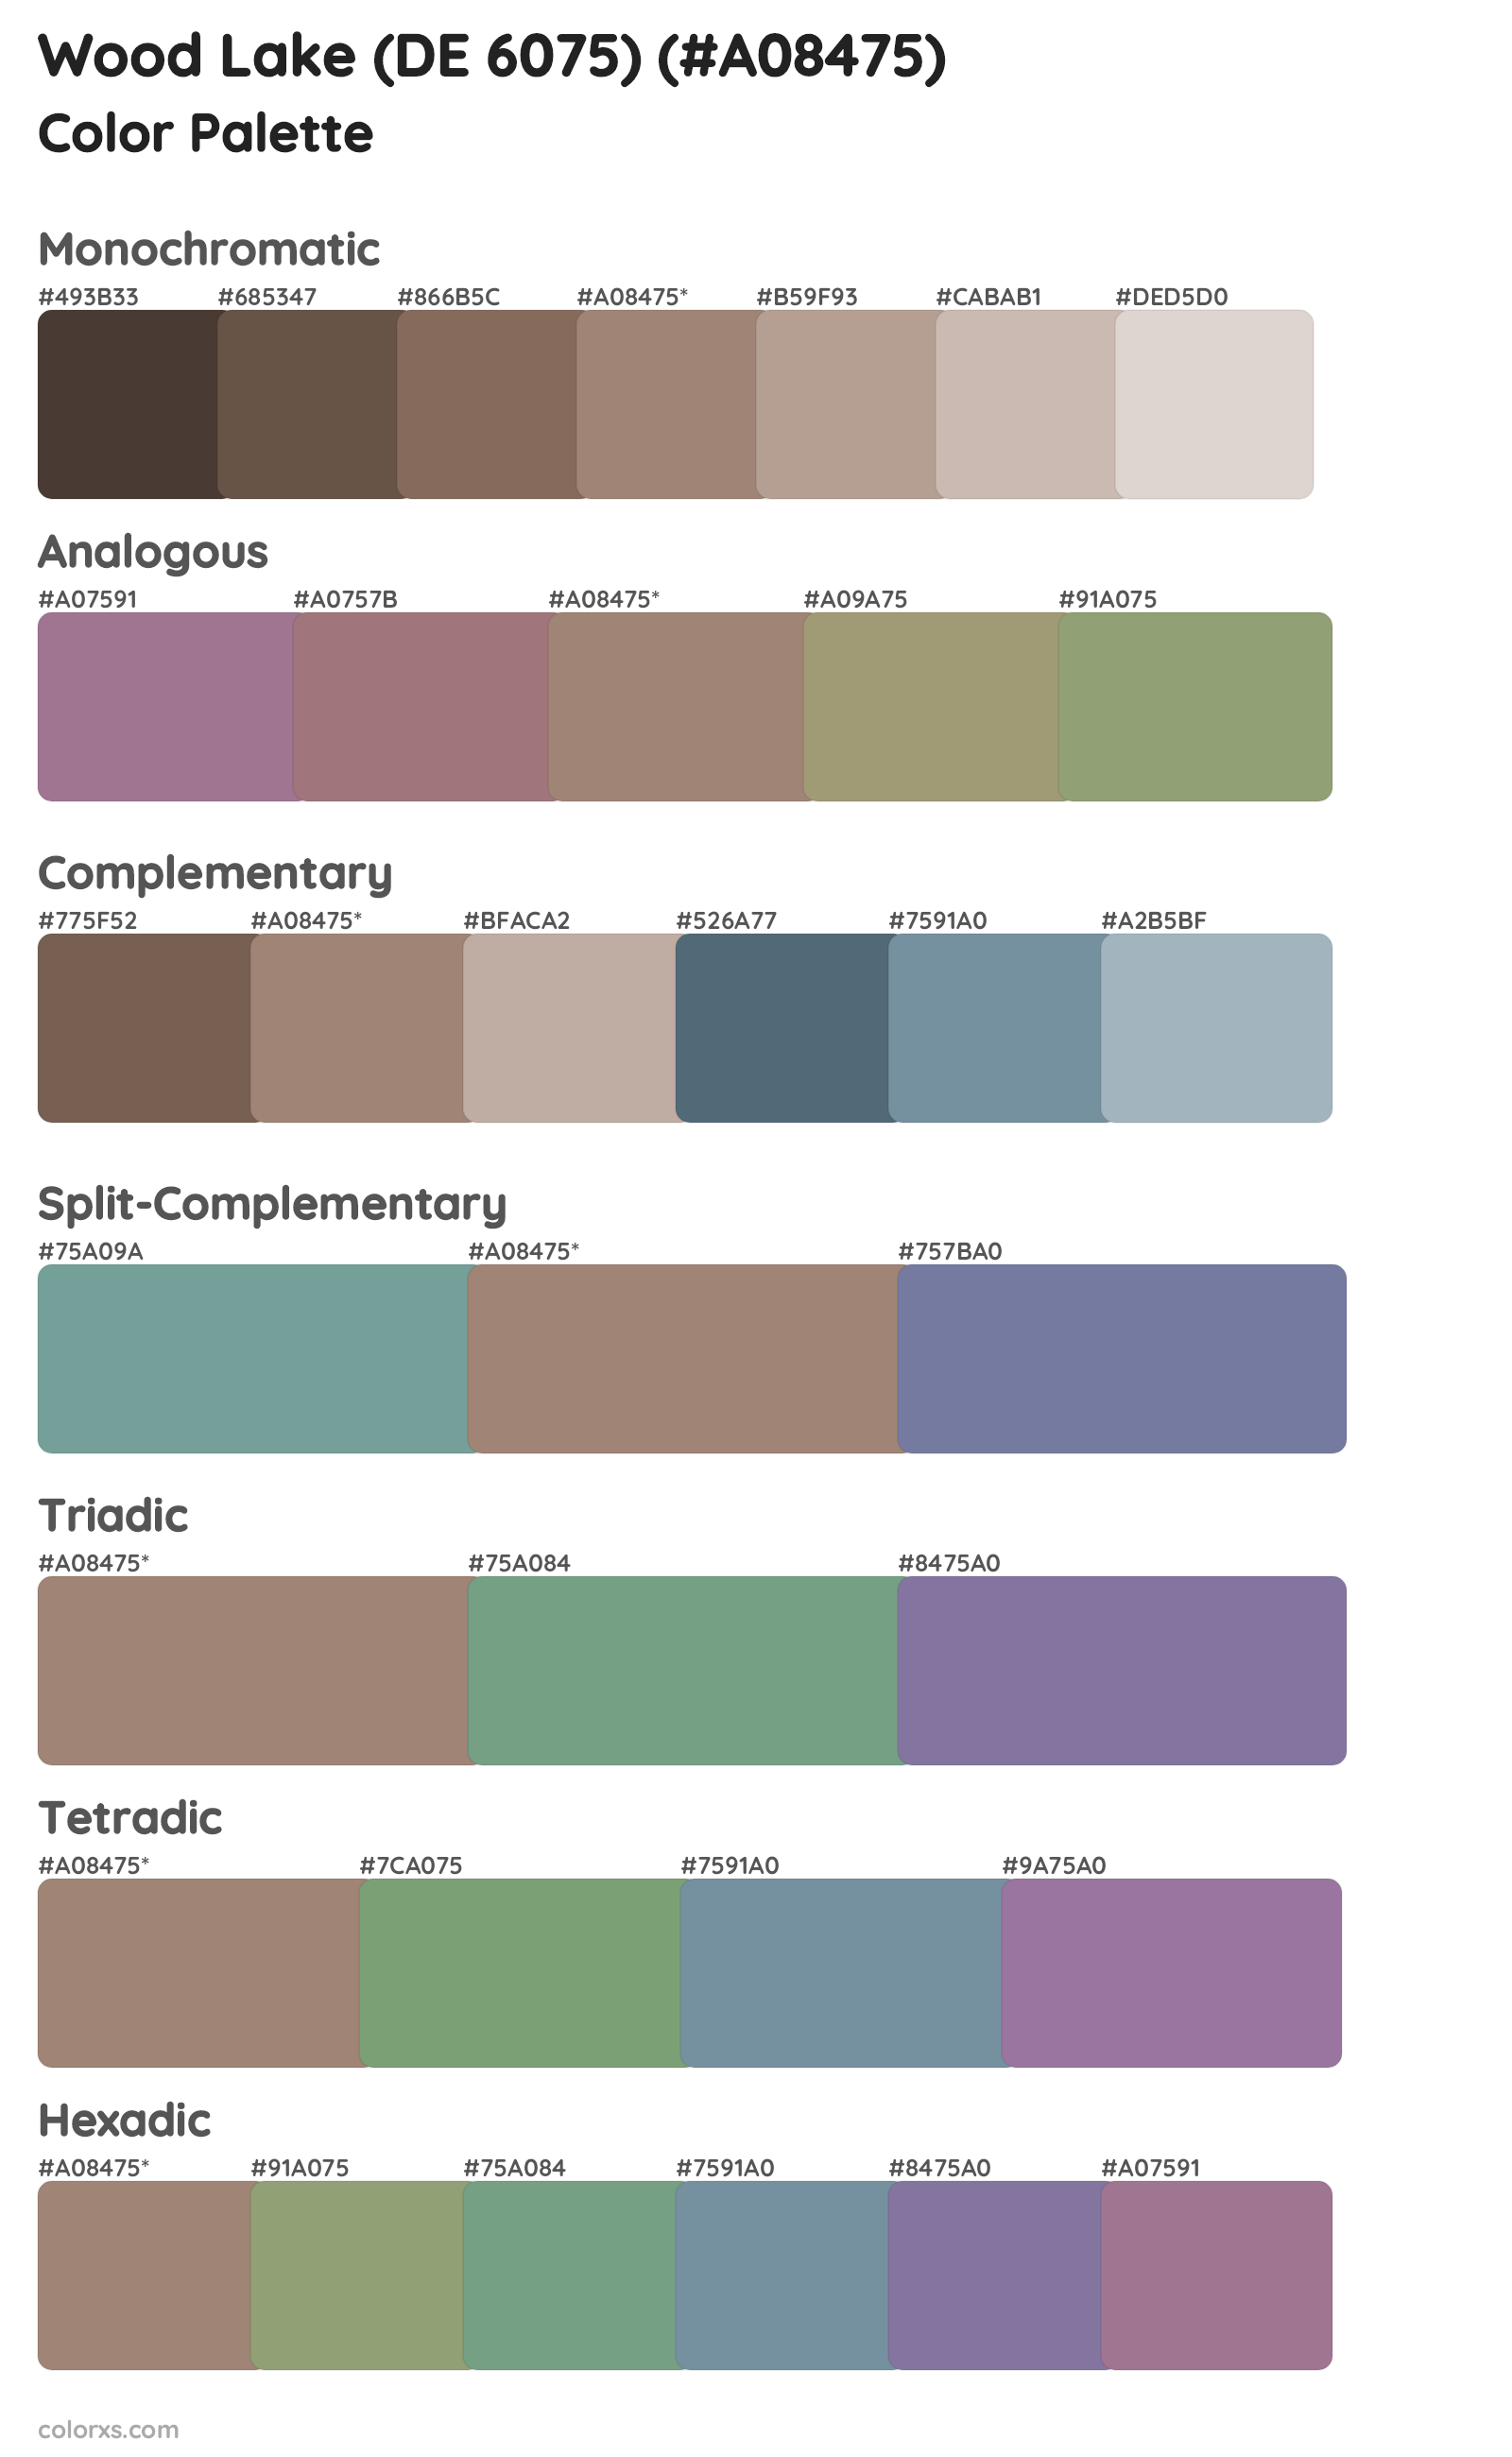 Wood Lake (DE 6075) Color Scheme Palettes